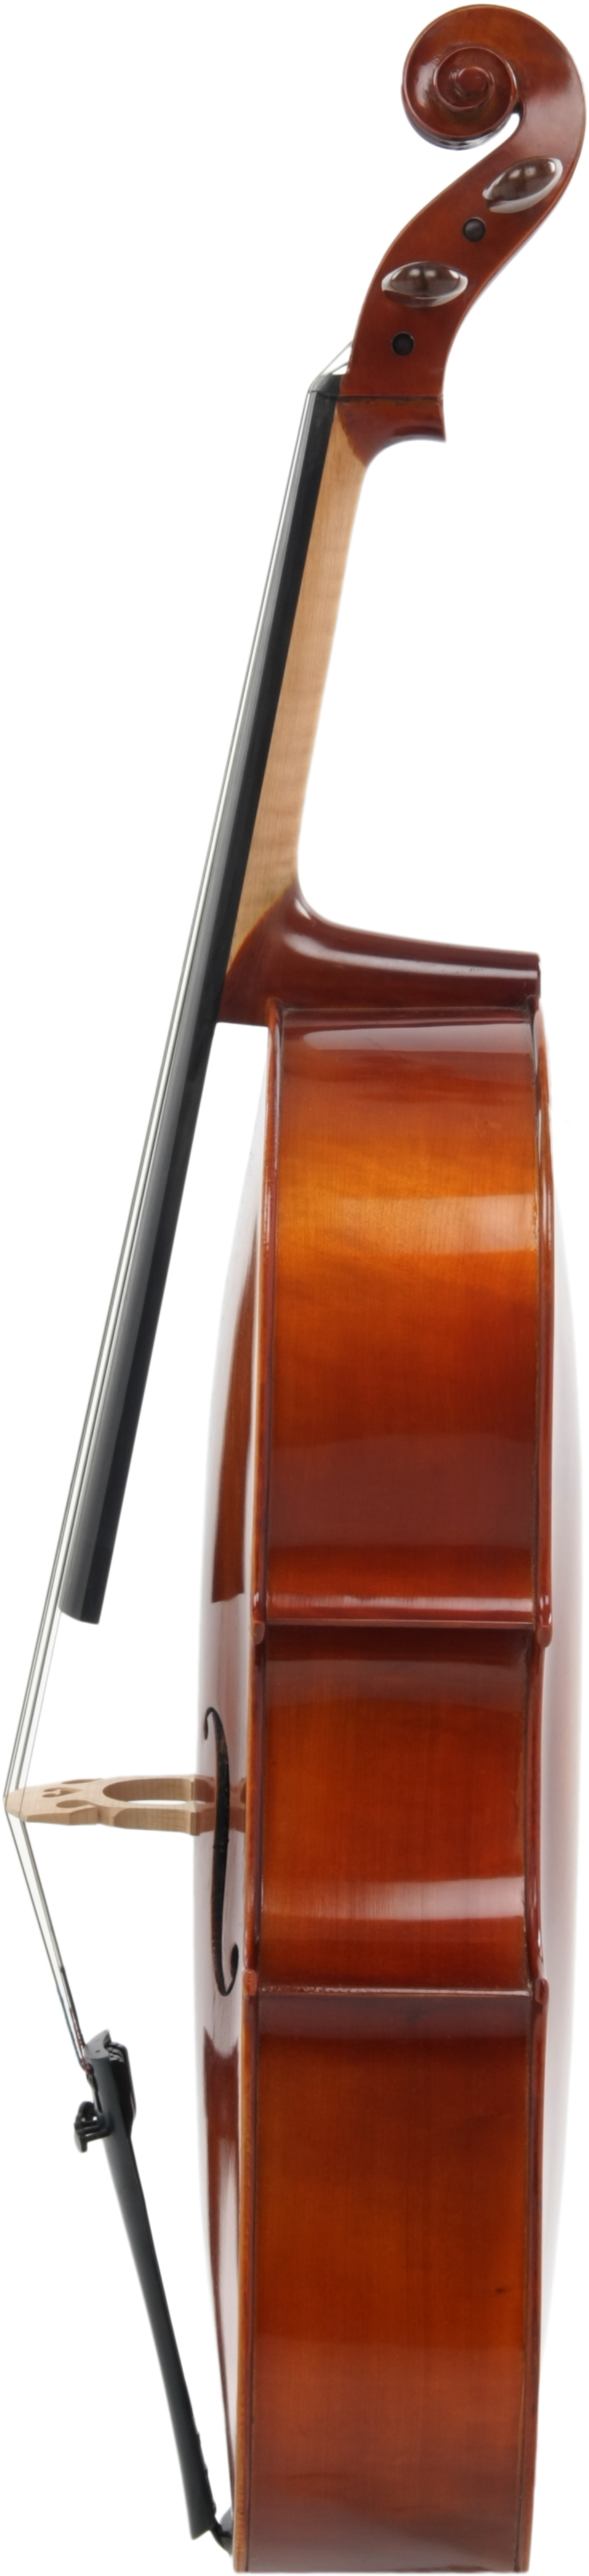 AS-190 Cellogarnitur 1/2 mit Bogen und Tasche